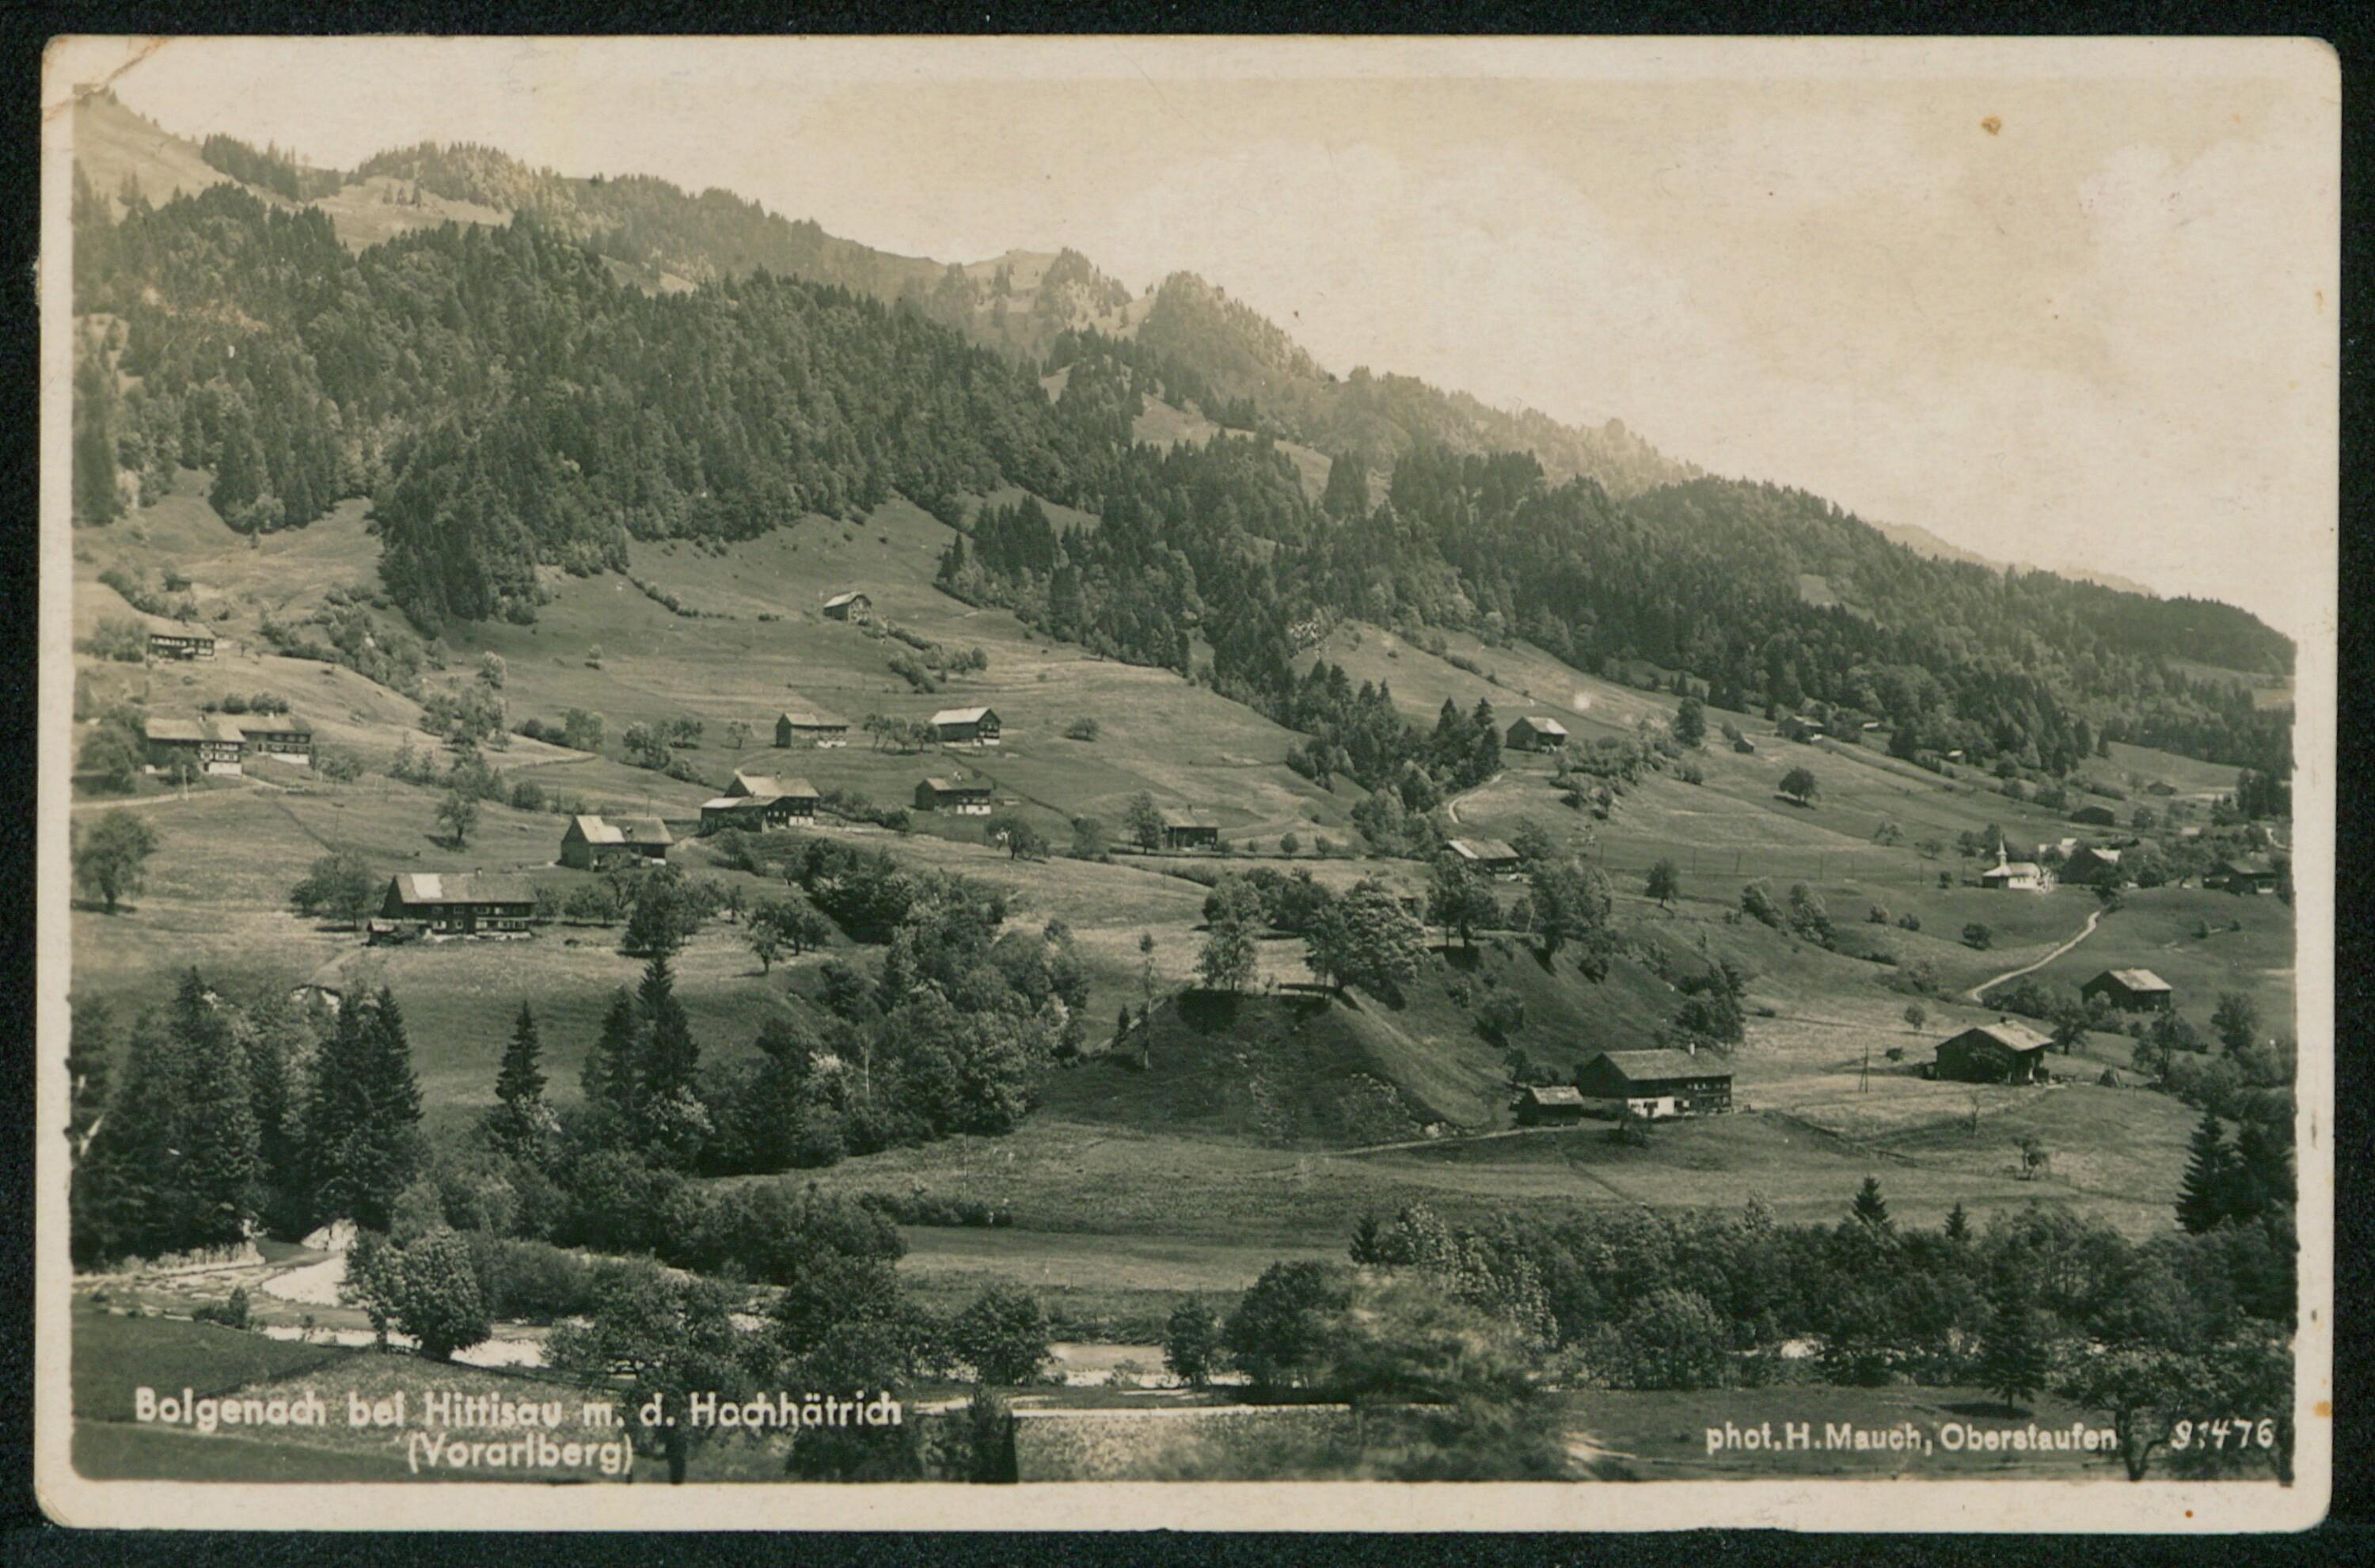 Bolgenach bei Hittisau m. d. Hochhätrich (Vorarlberg)></div>


    <hr>
    <div class=